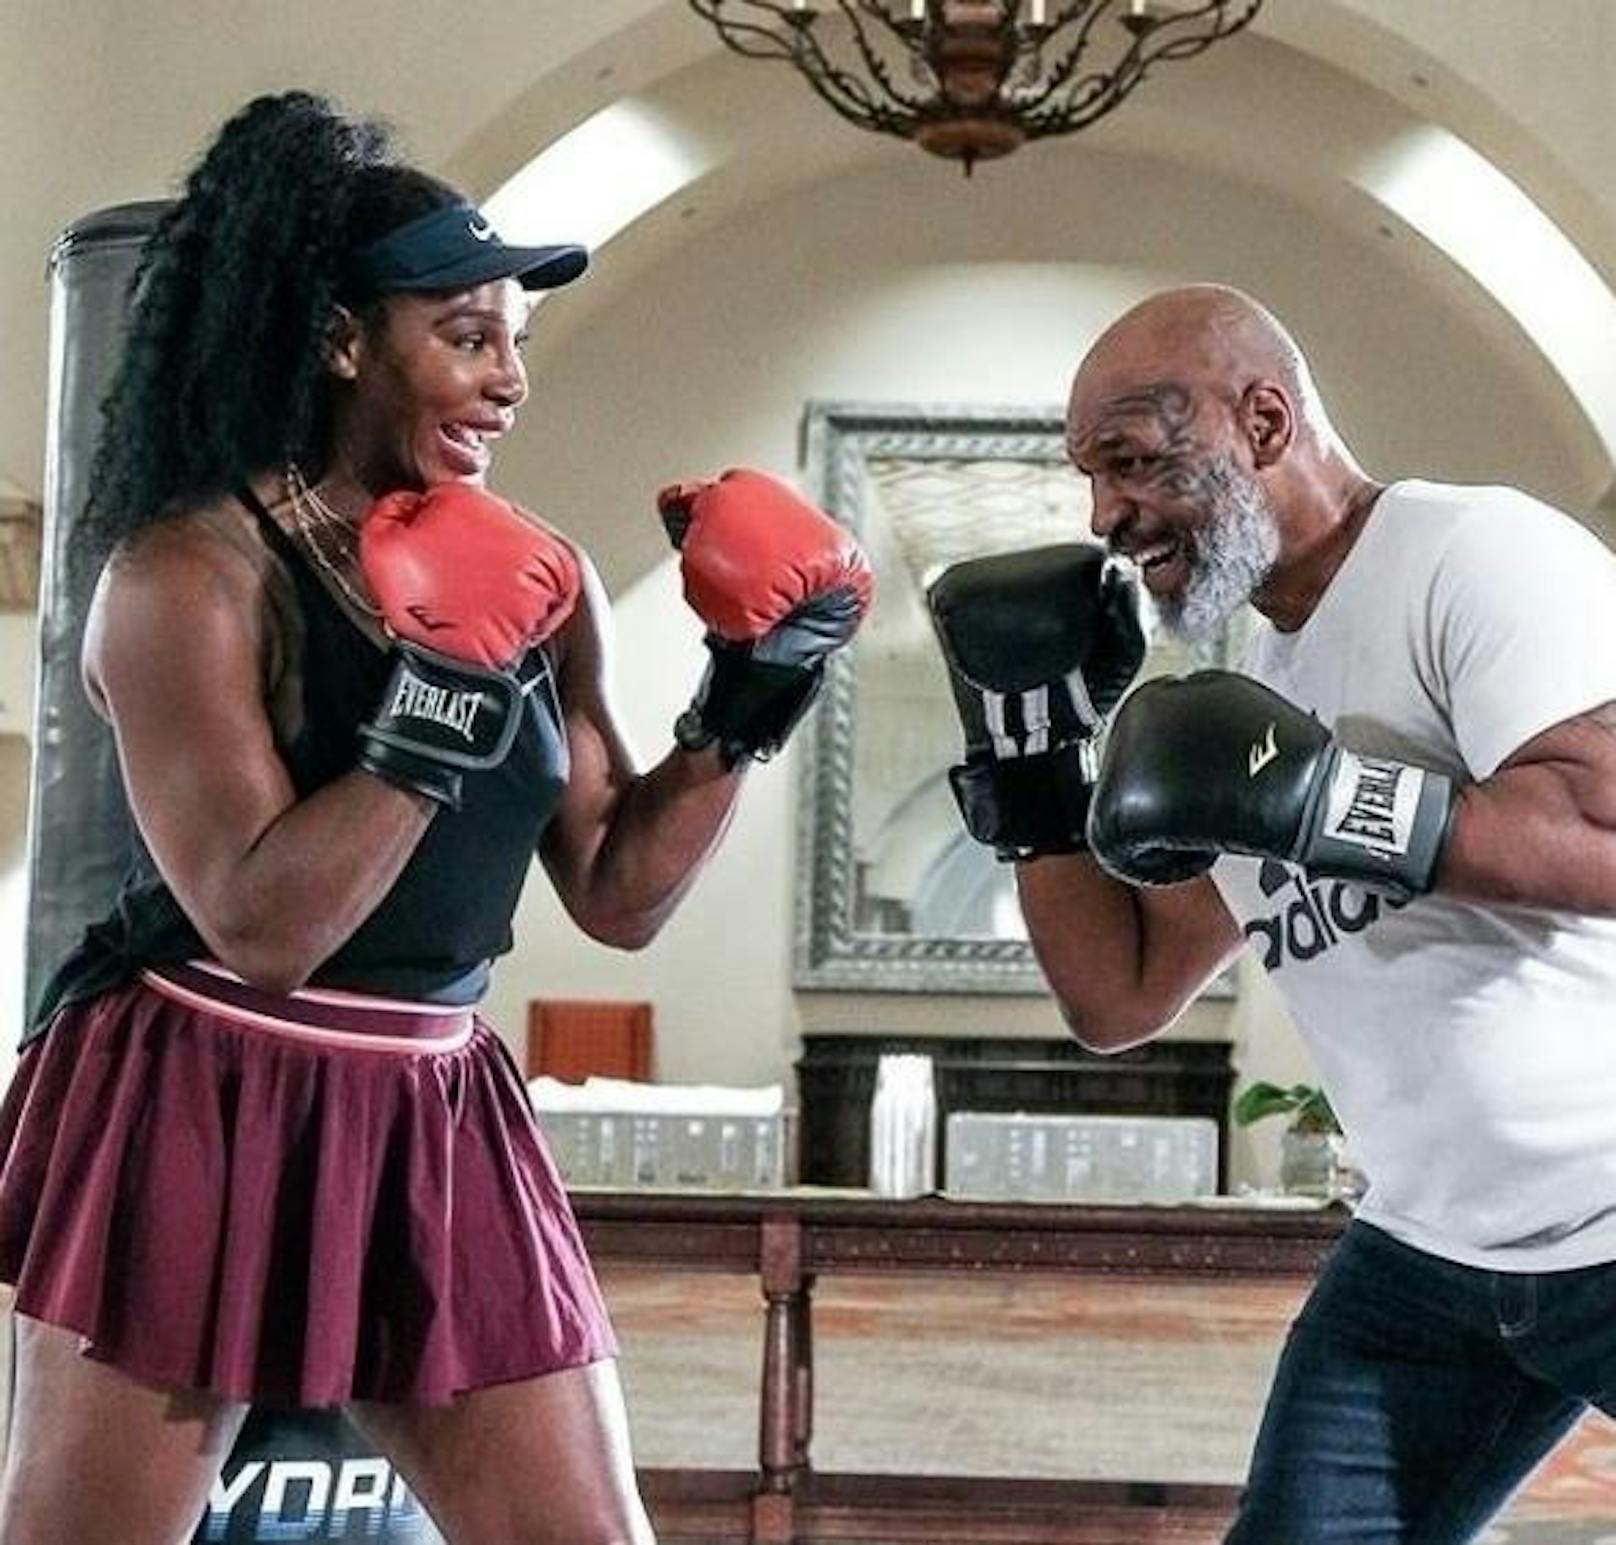 20.12.2019: Zwei Sportlegenden unter sich. Tennis-Ass Serena Williams erhält Boxtraining vom ehemaligen Schwergewichtsweltmeister Mike Tyson.